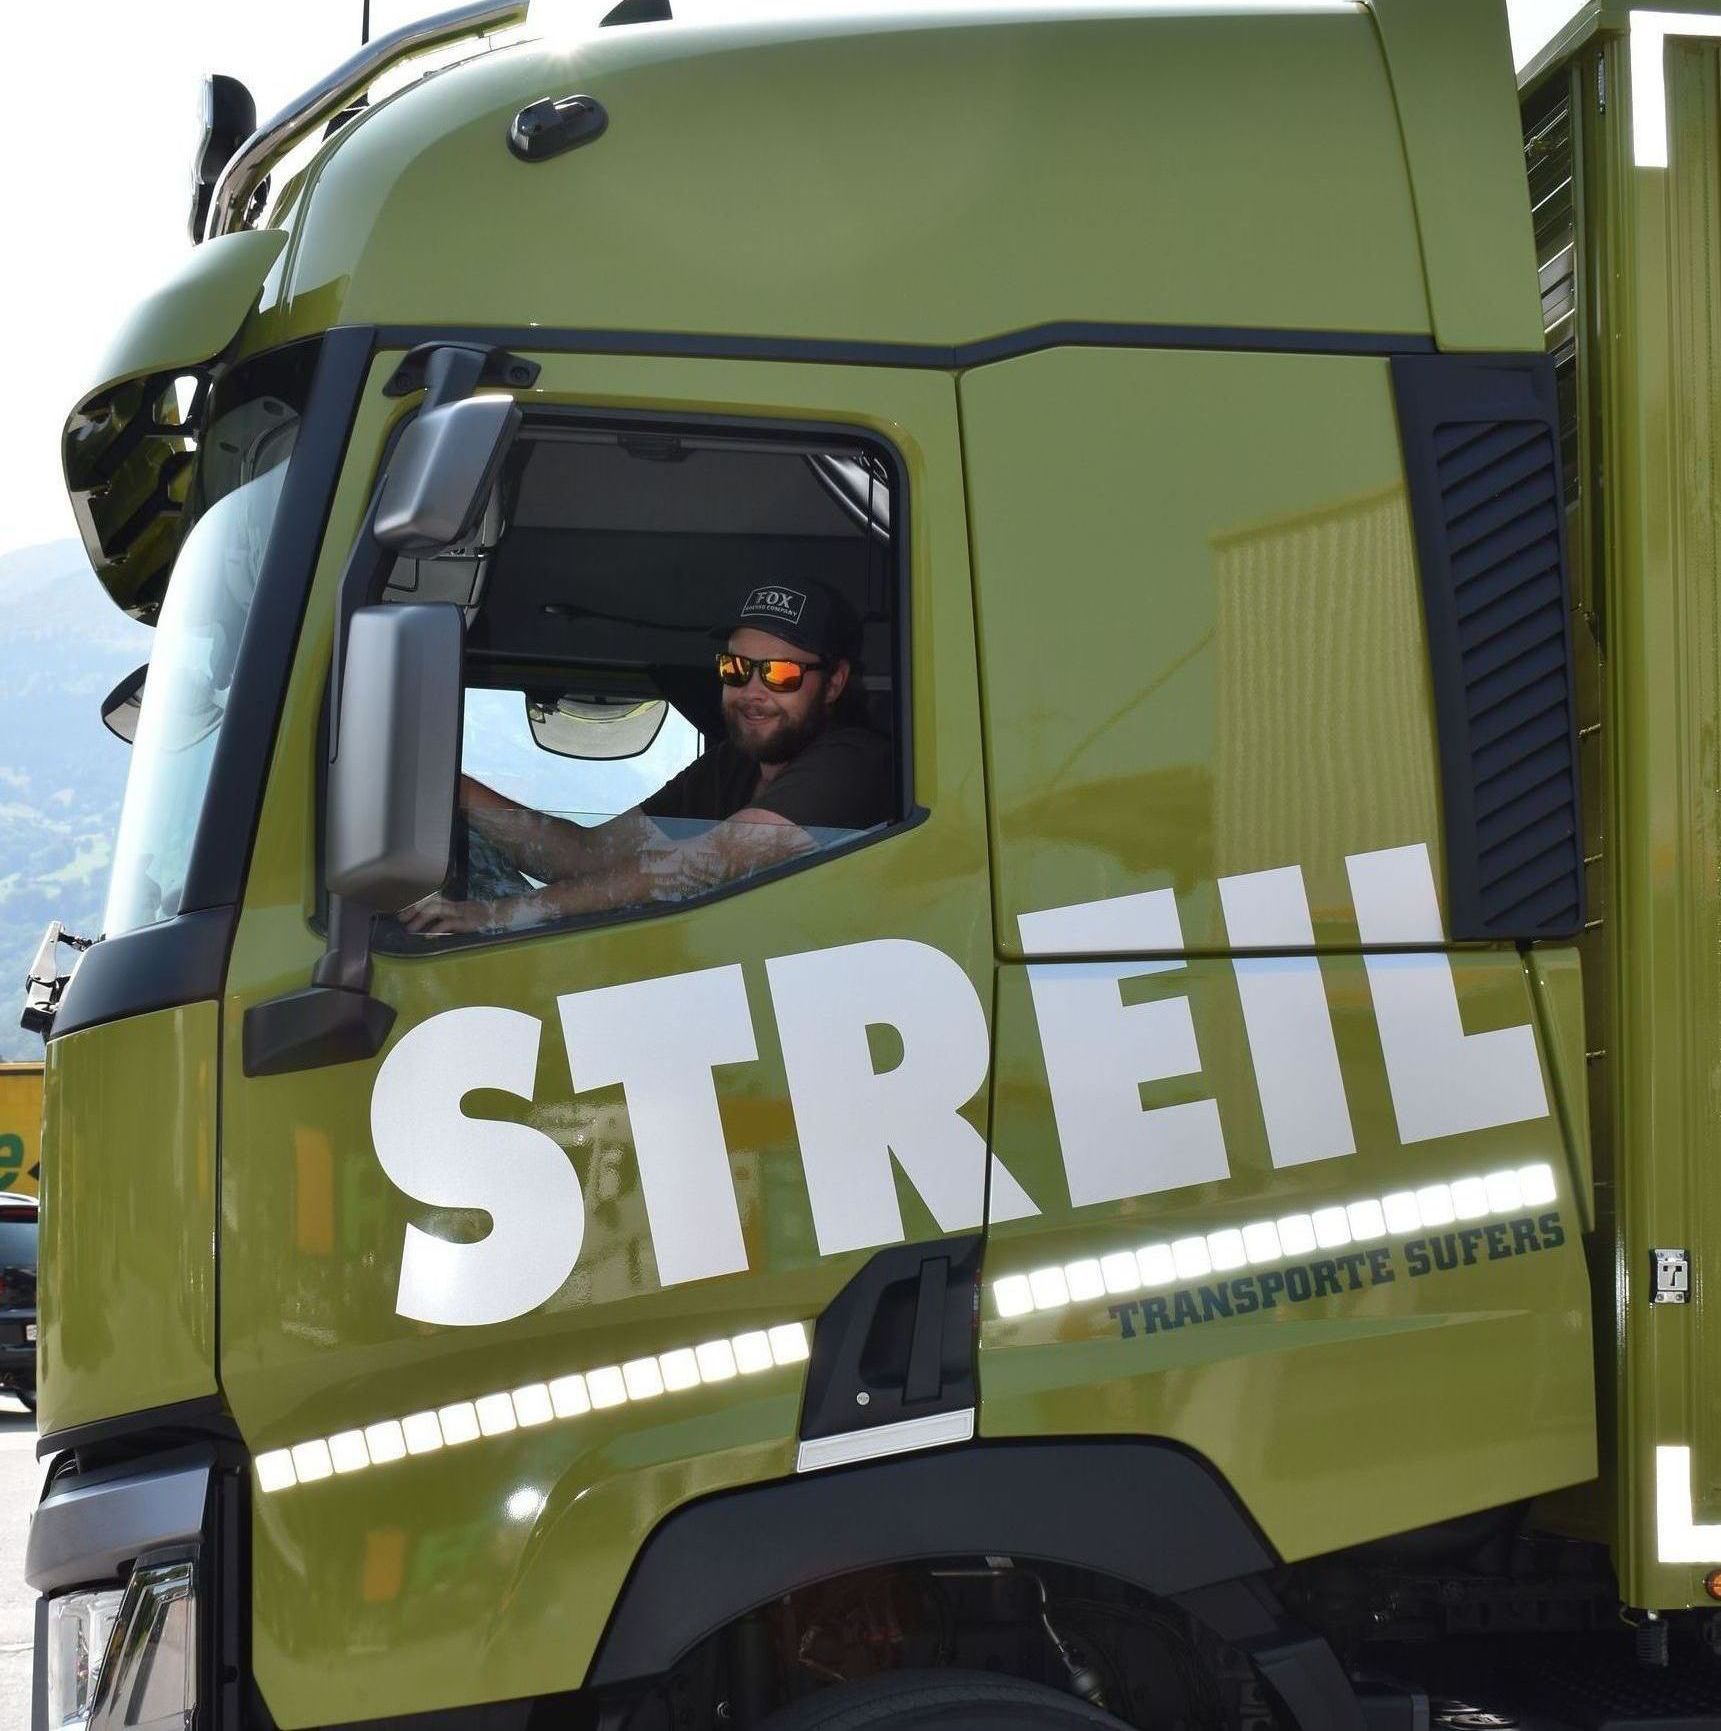 Team - Streil Transporte AG – Sufers